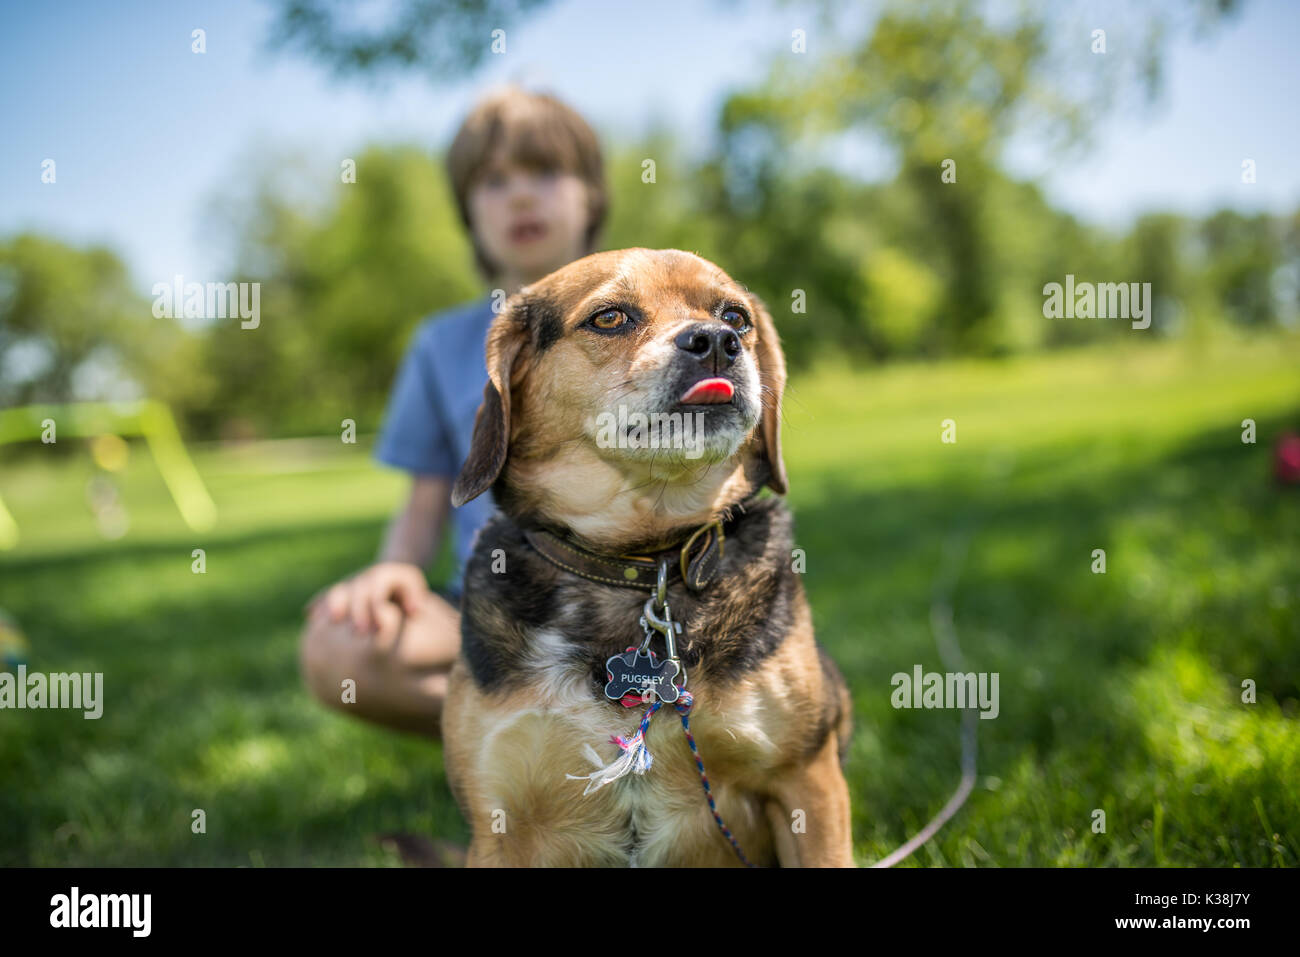 1,435 Dog Playing Baseball Images, Stock Photos & Vectors